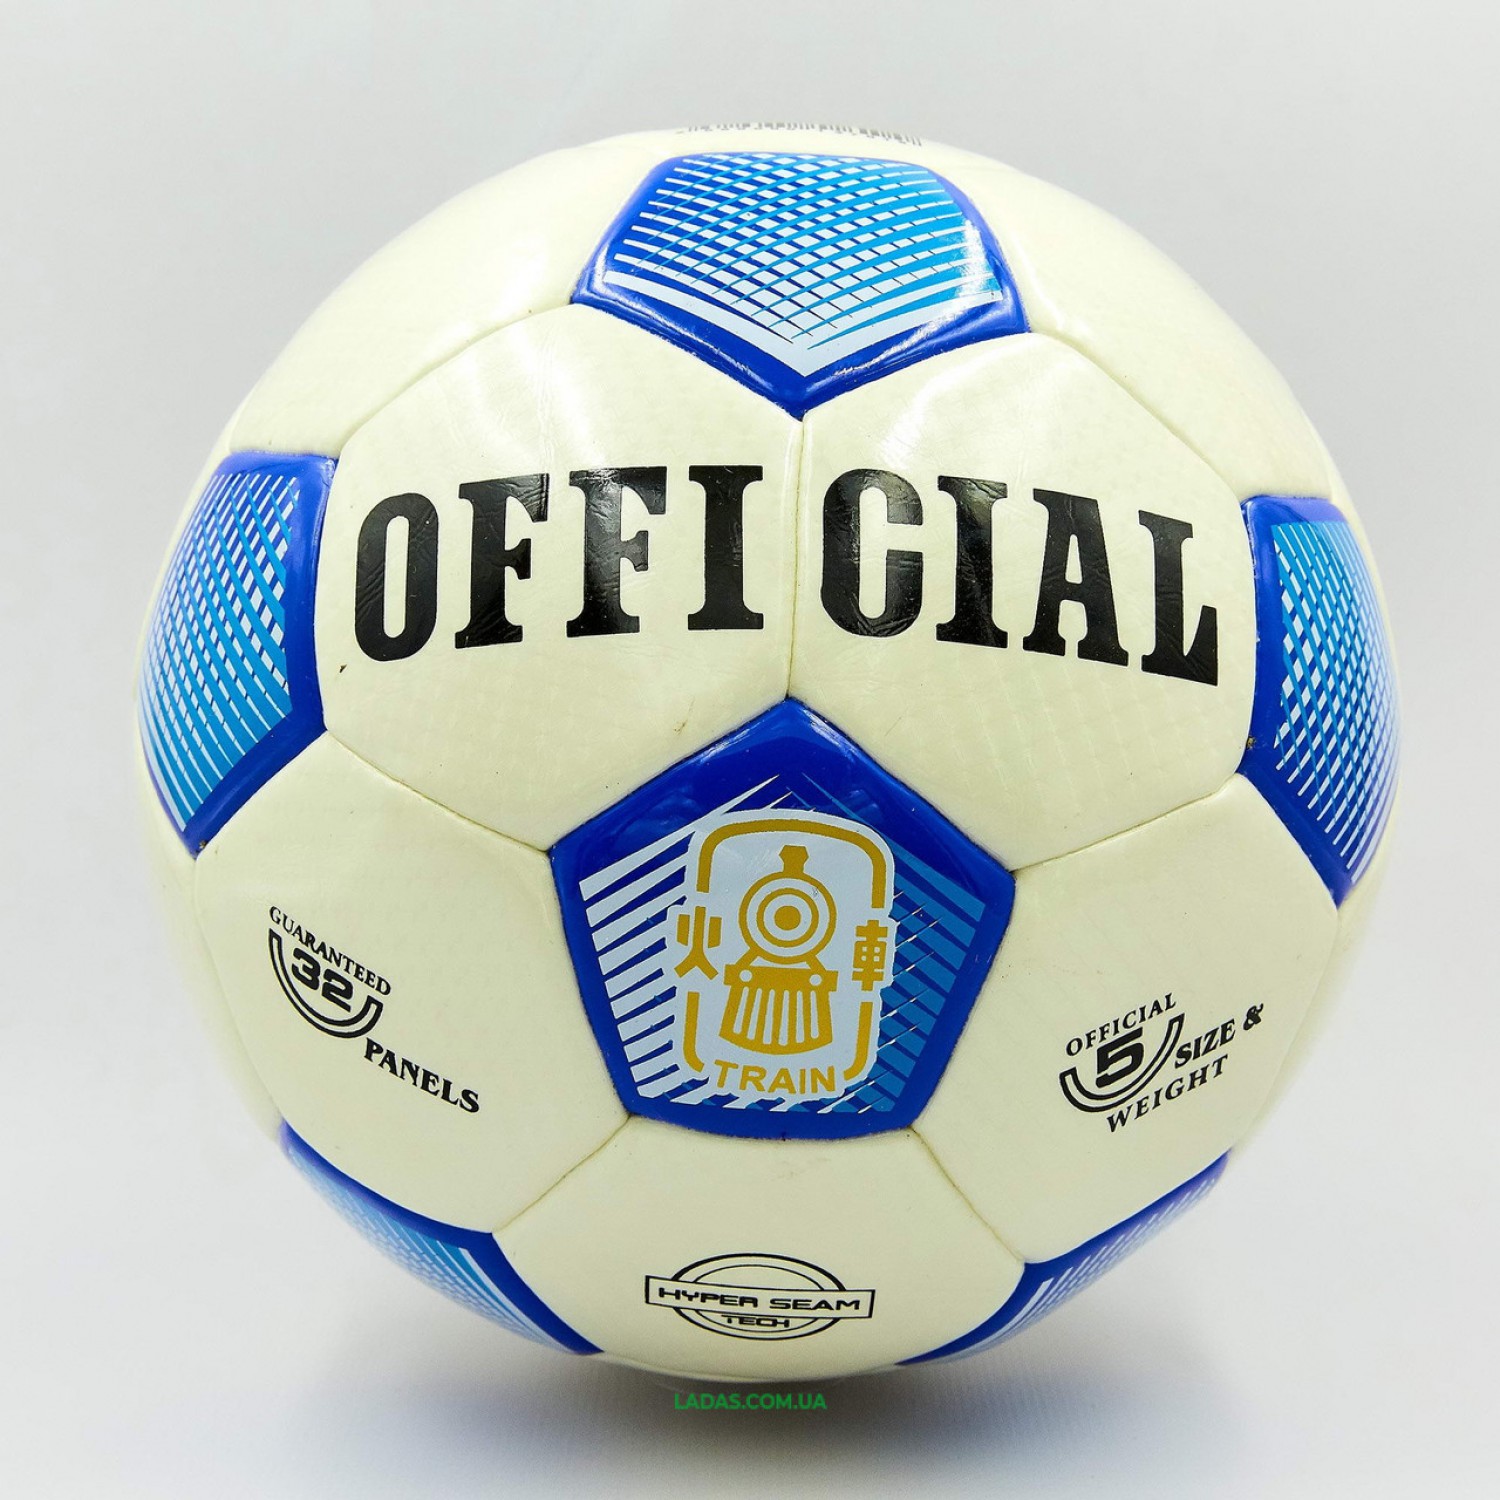 Мяч футбольный №5 PU HYDRO TECHNOLOGY OFFICIAL FB-0178 цвета в ассортименте (№5, 5 сл., сшит вручную)